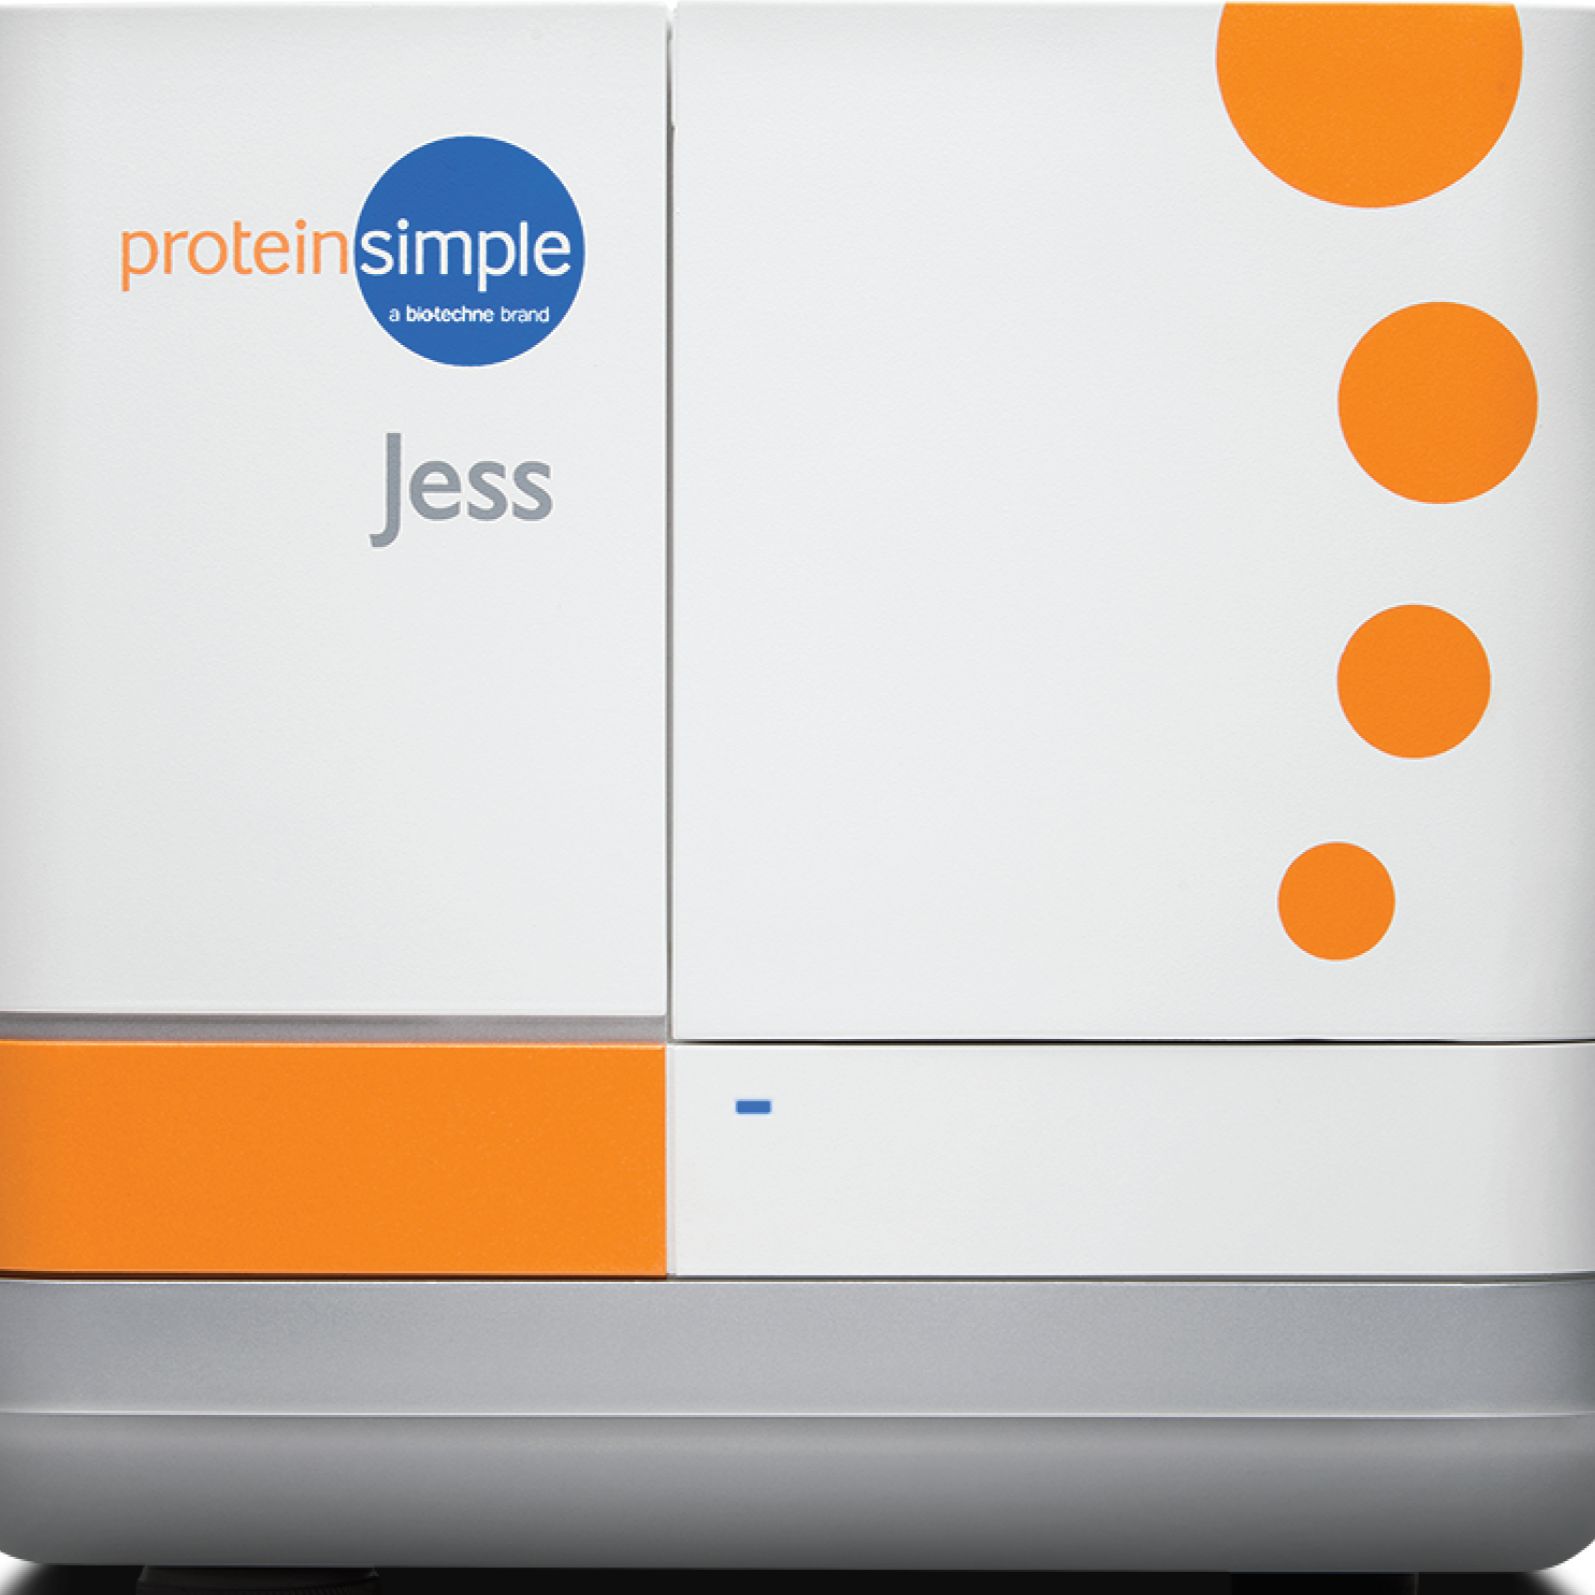 Jess 多功能全自动蛋白质表达定量分析系统